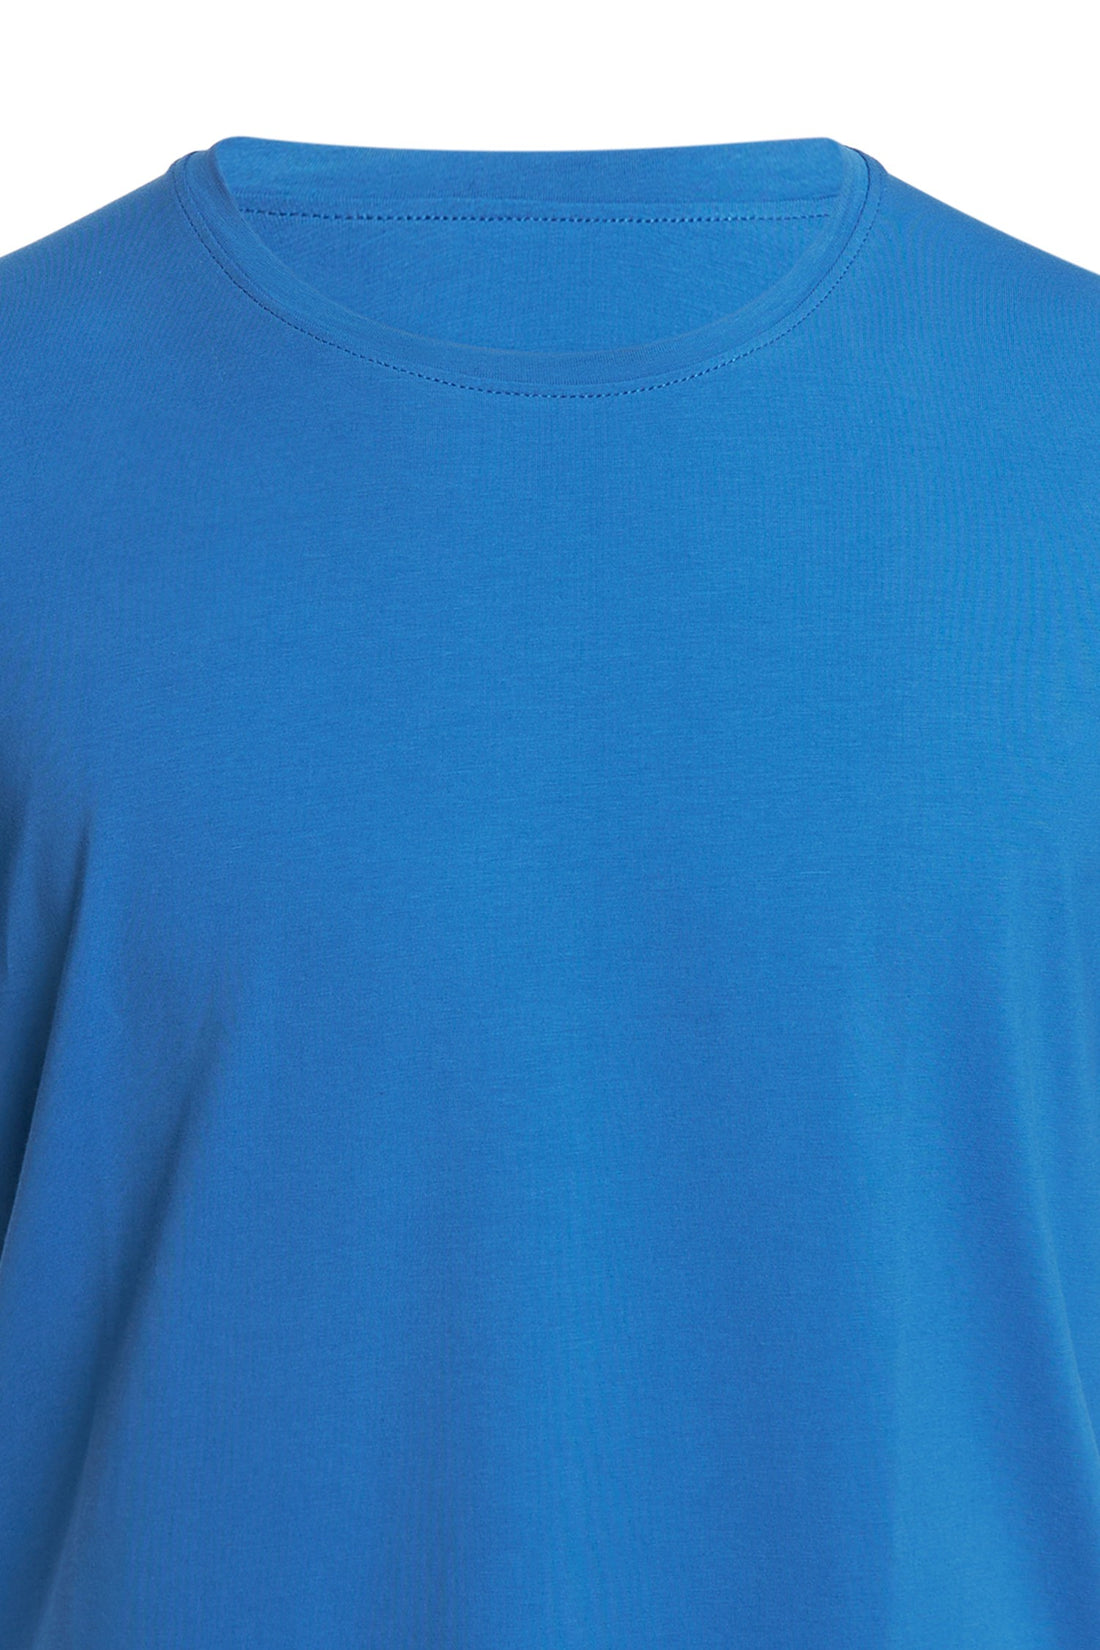 Ultramarine short sleeve T-shirt